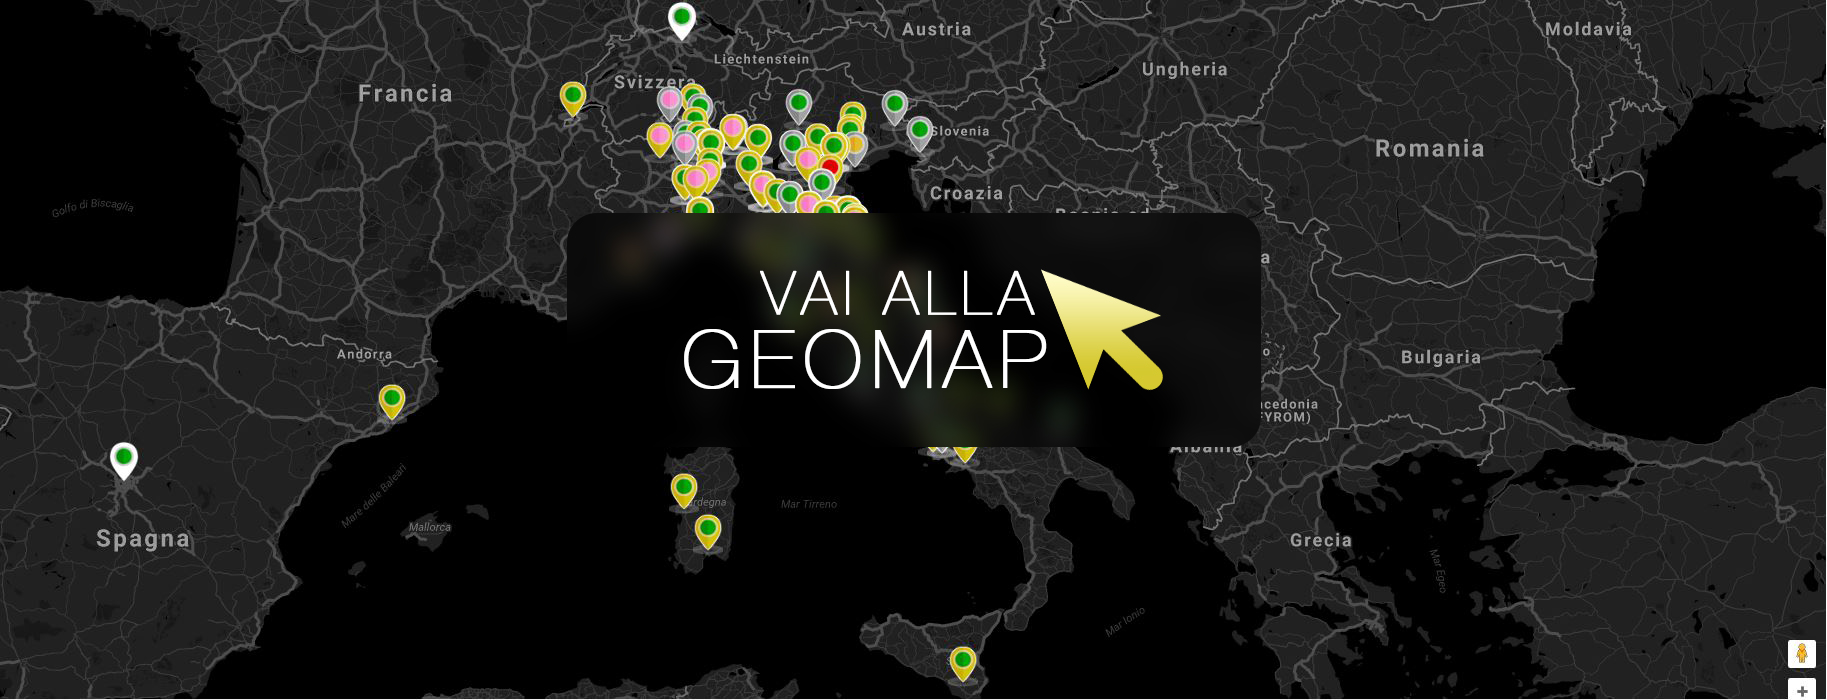 Guarda gli annunci a Milano nella mappa intervattiva